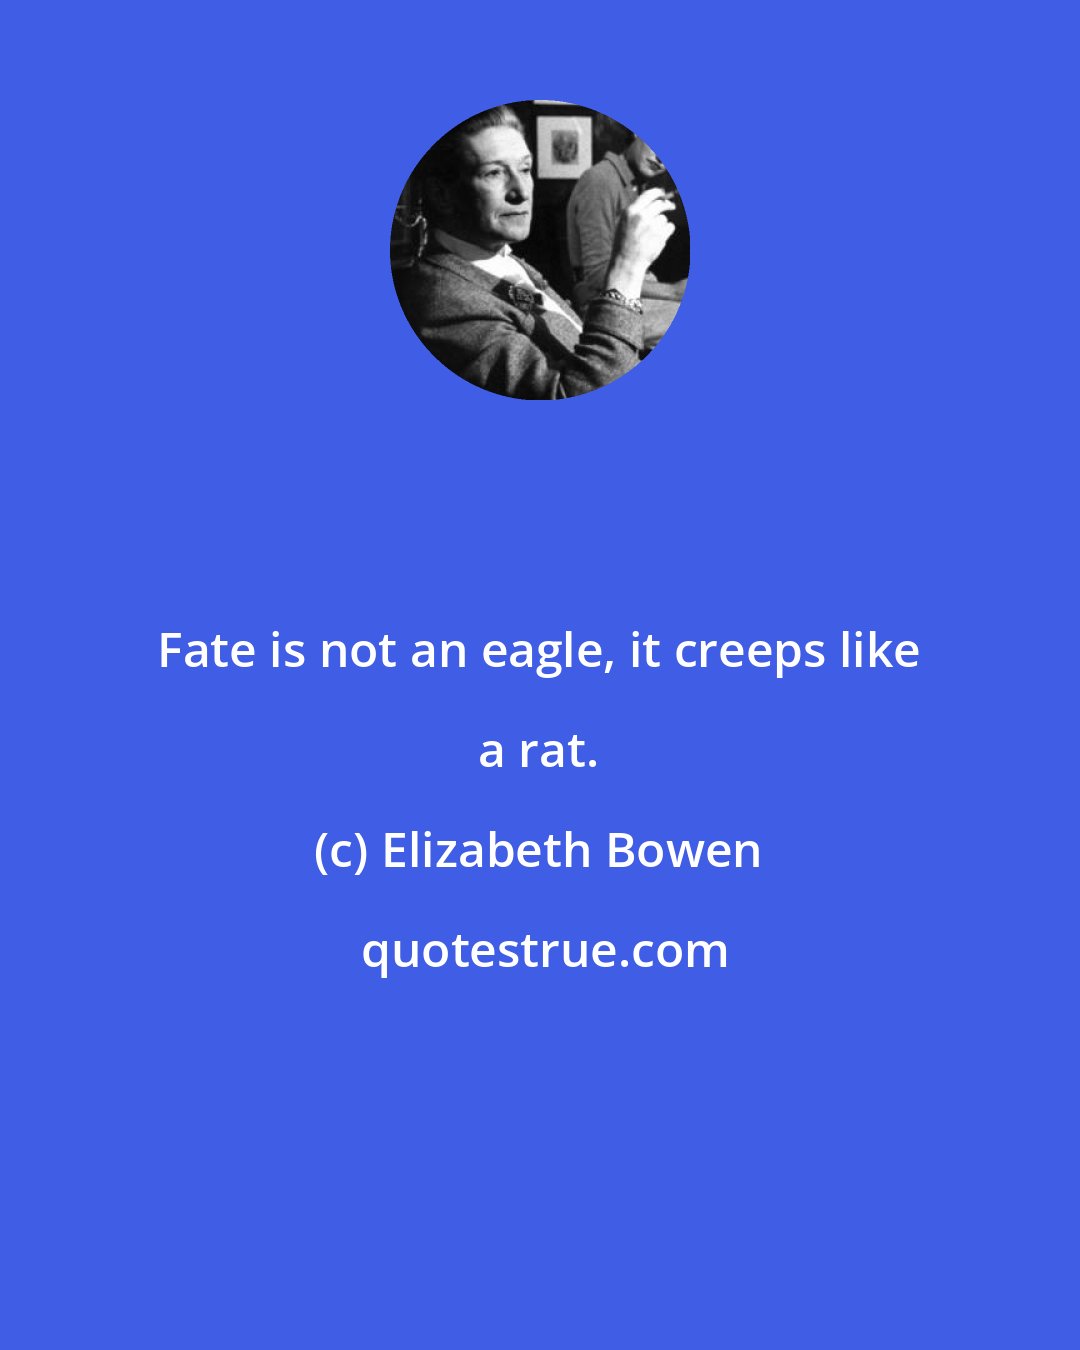 Elizabeth Bowen: Fate is not an eagle, it creeps like a rat.